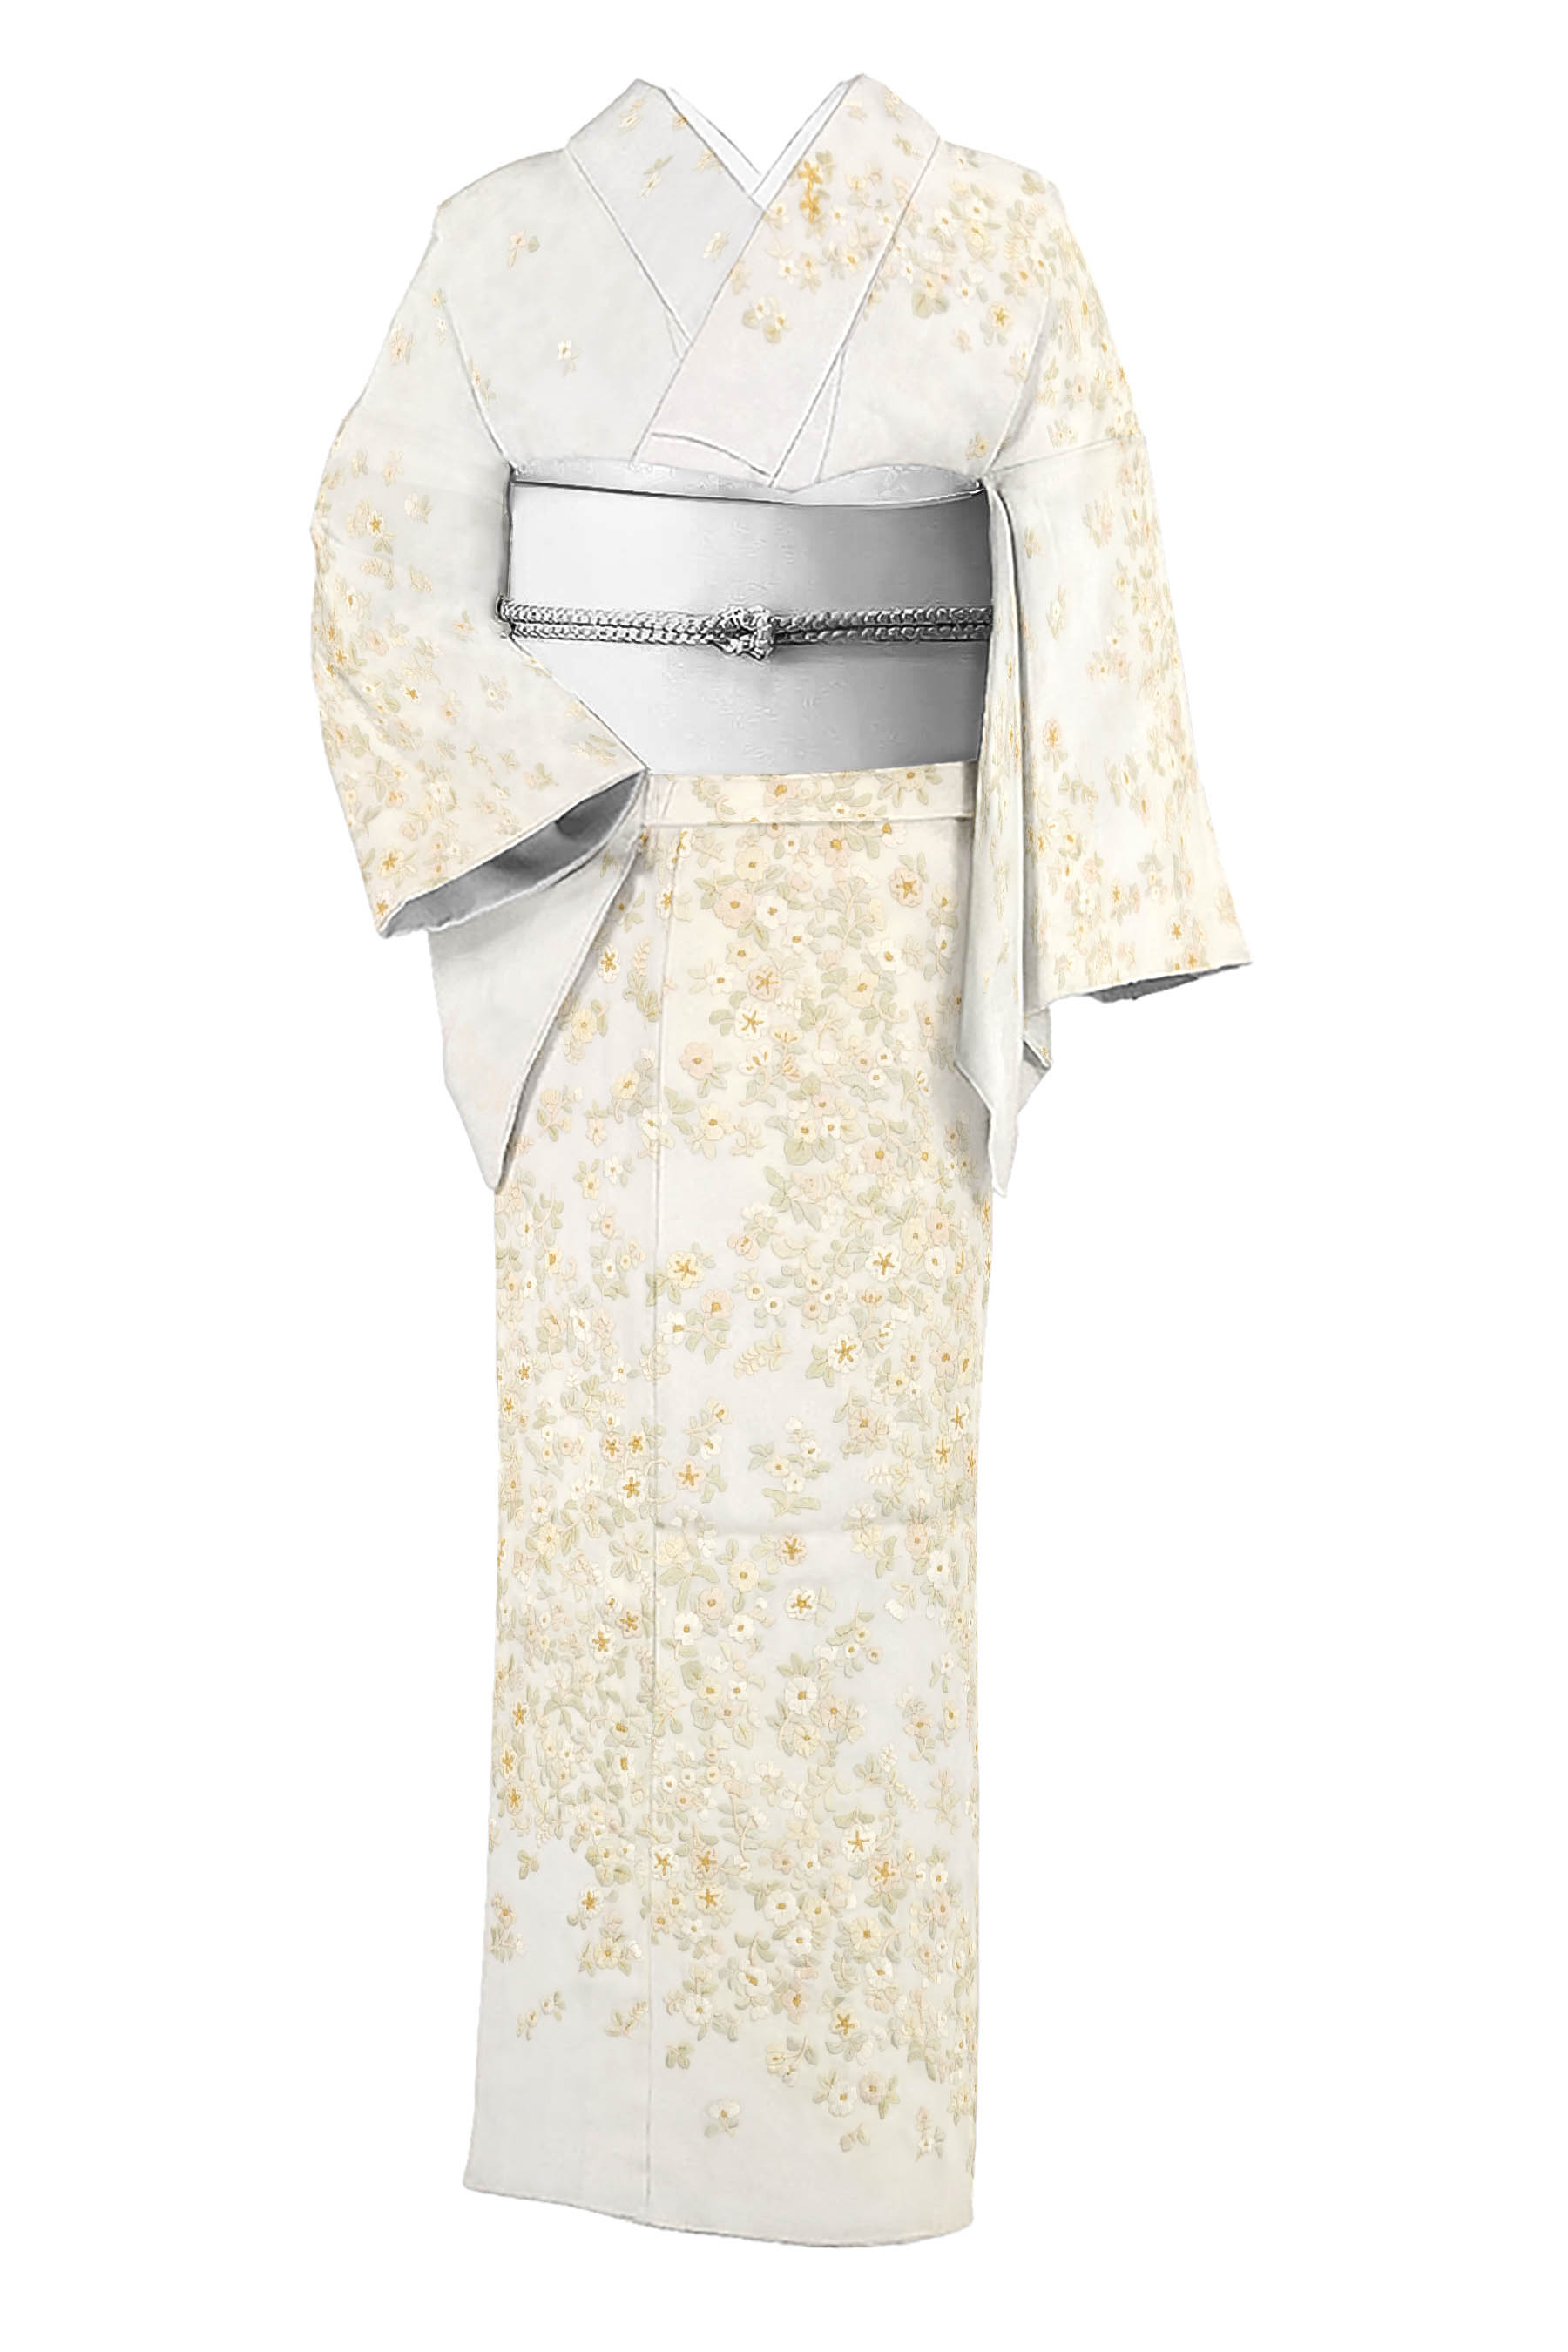 京の名工房】 高級総手刺繍訪問着 「小花尽し」 気品溢れる和のドレス 